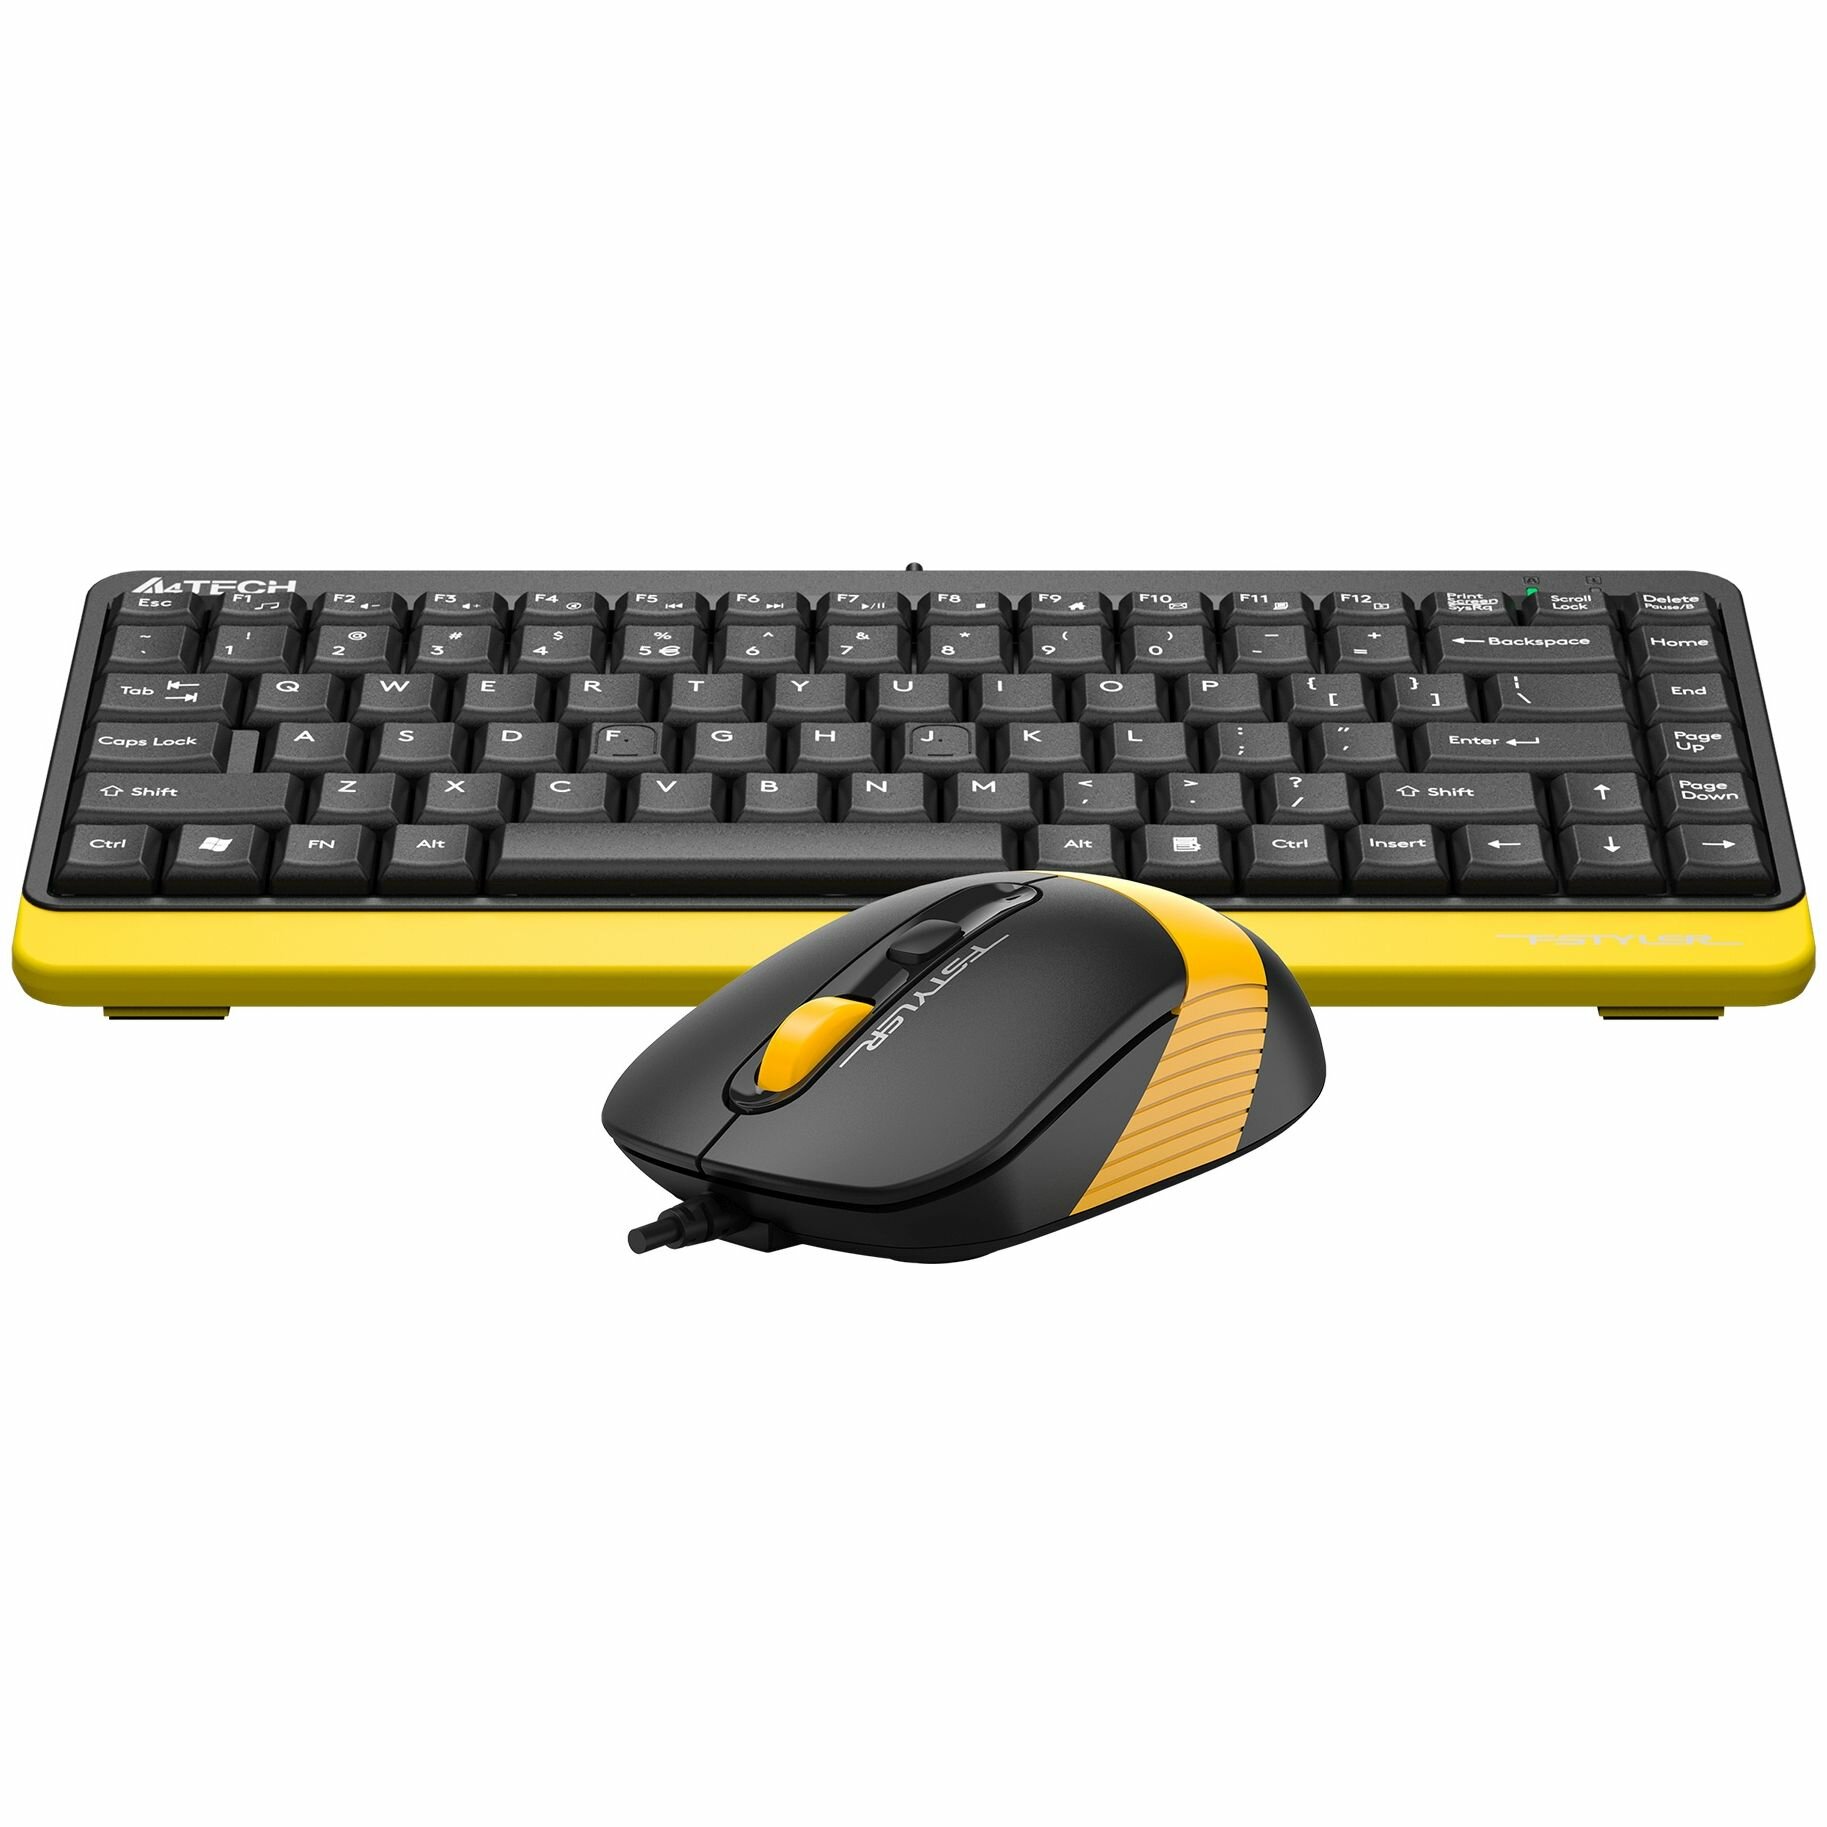 Клавиатура + мышь A4Tech Fstyler F1110 клав: черный/желтый мышь: черный/желтый USB